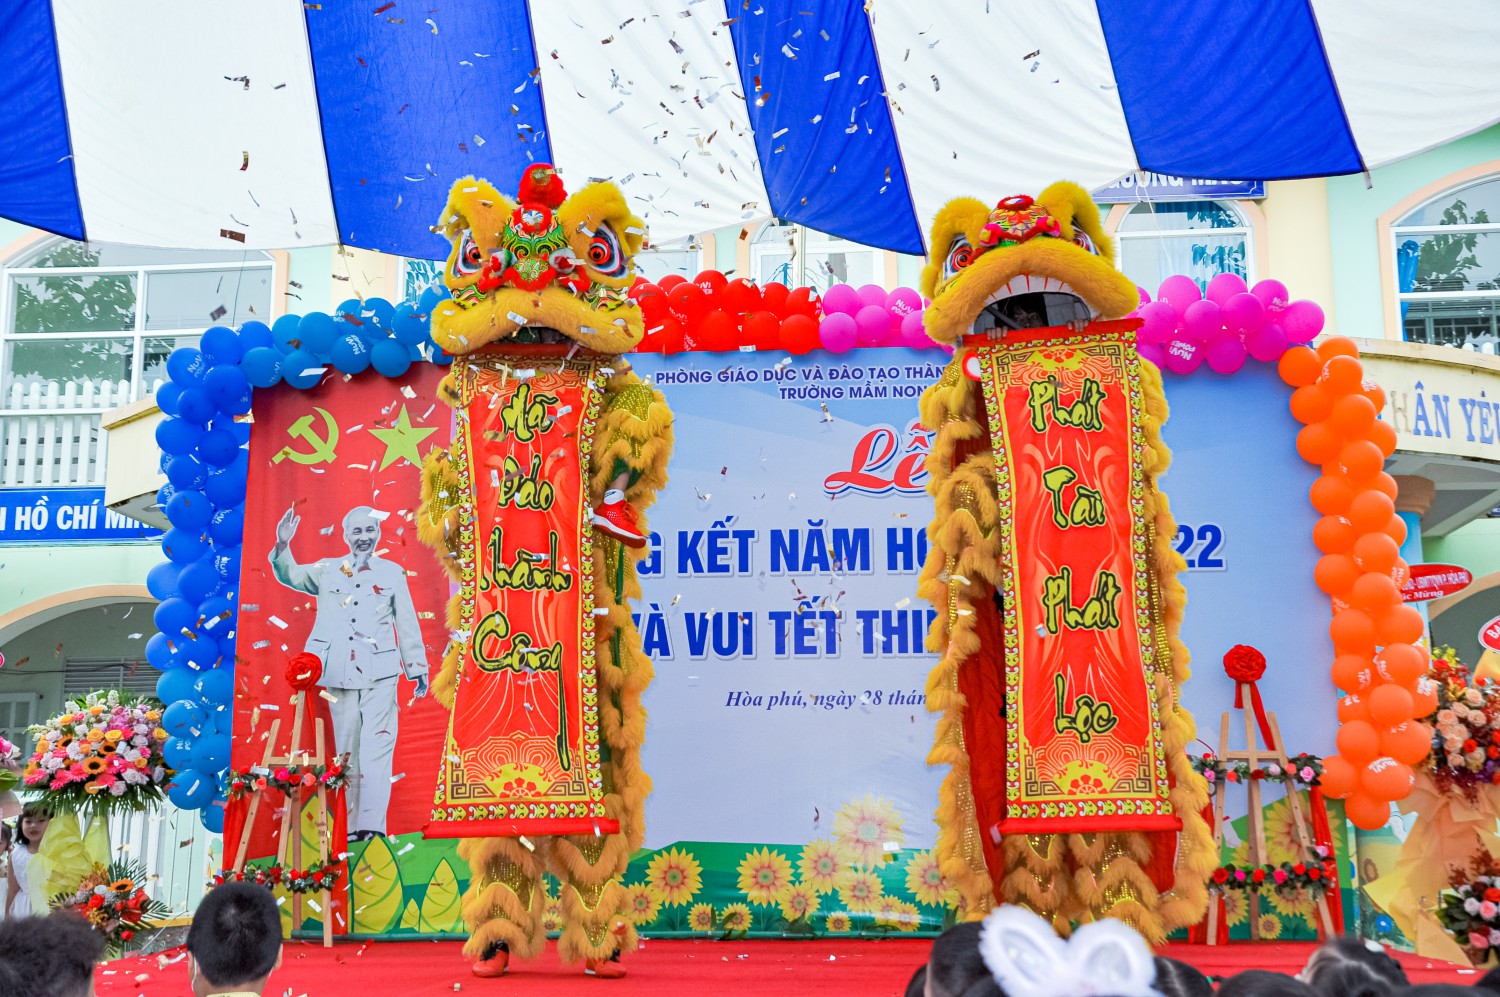 Trường Mầm non Hòa Phú long trọng tổ chức lễ tổng kết năm học 2021-2022 và Vui tết thiếu nhi 1/6.